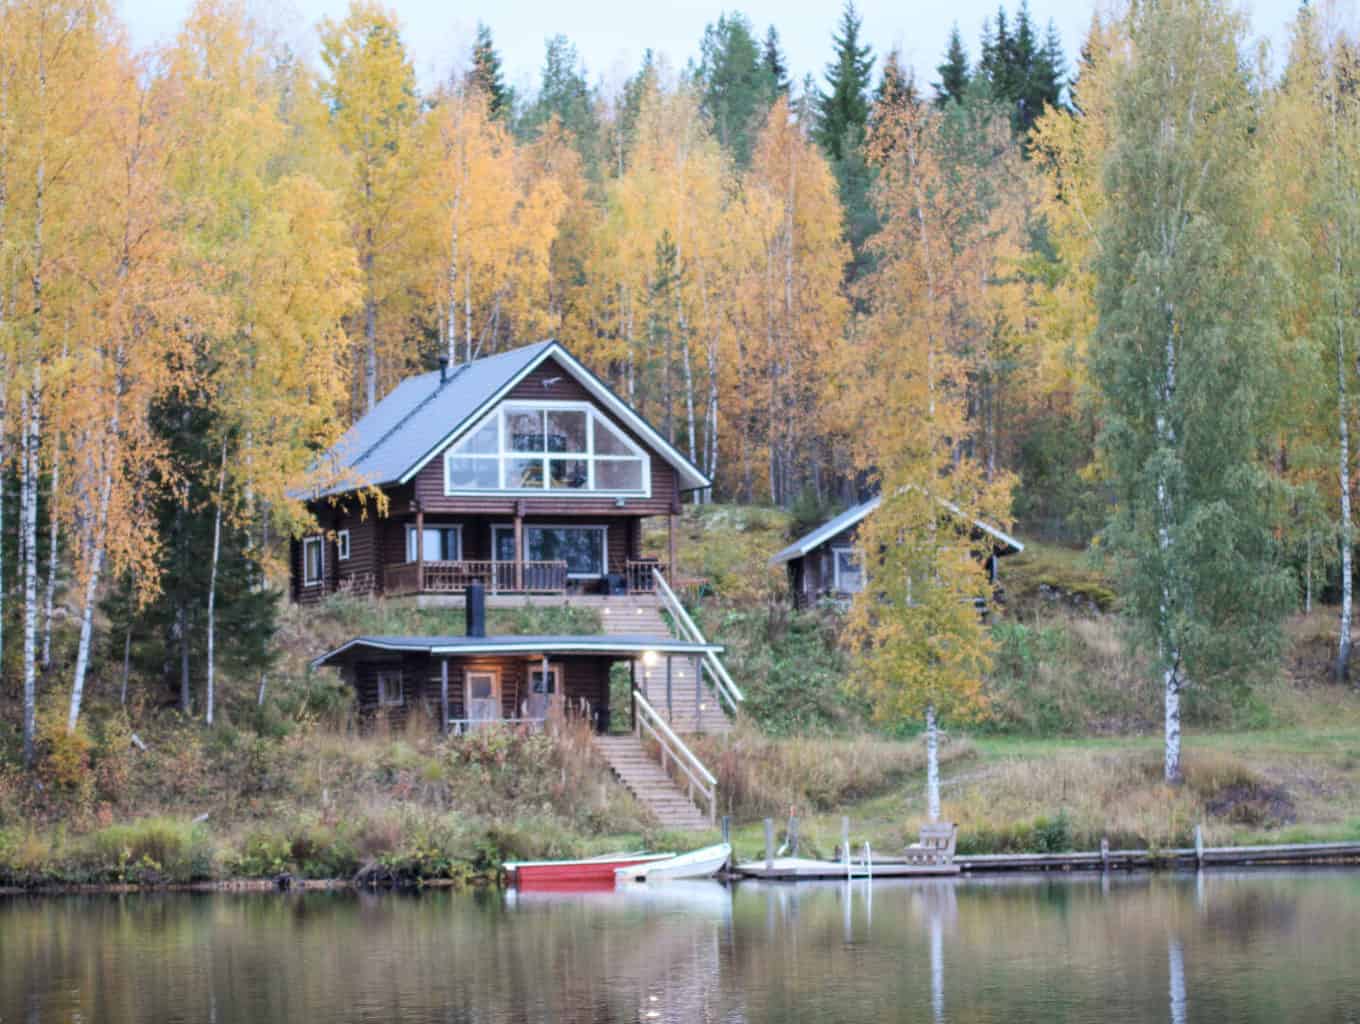 Villa Hiekkaranta rental cottage in the lake